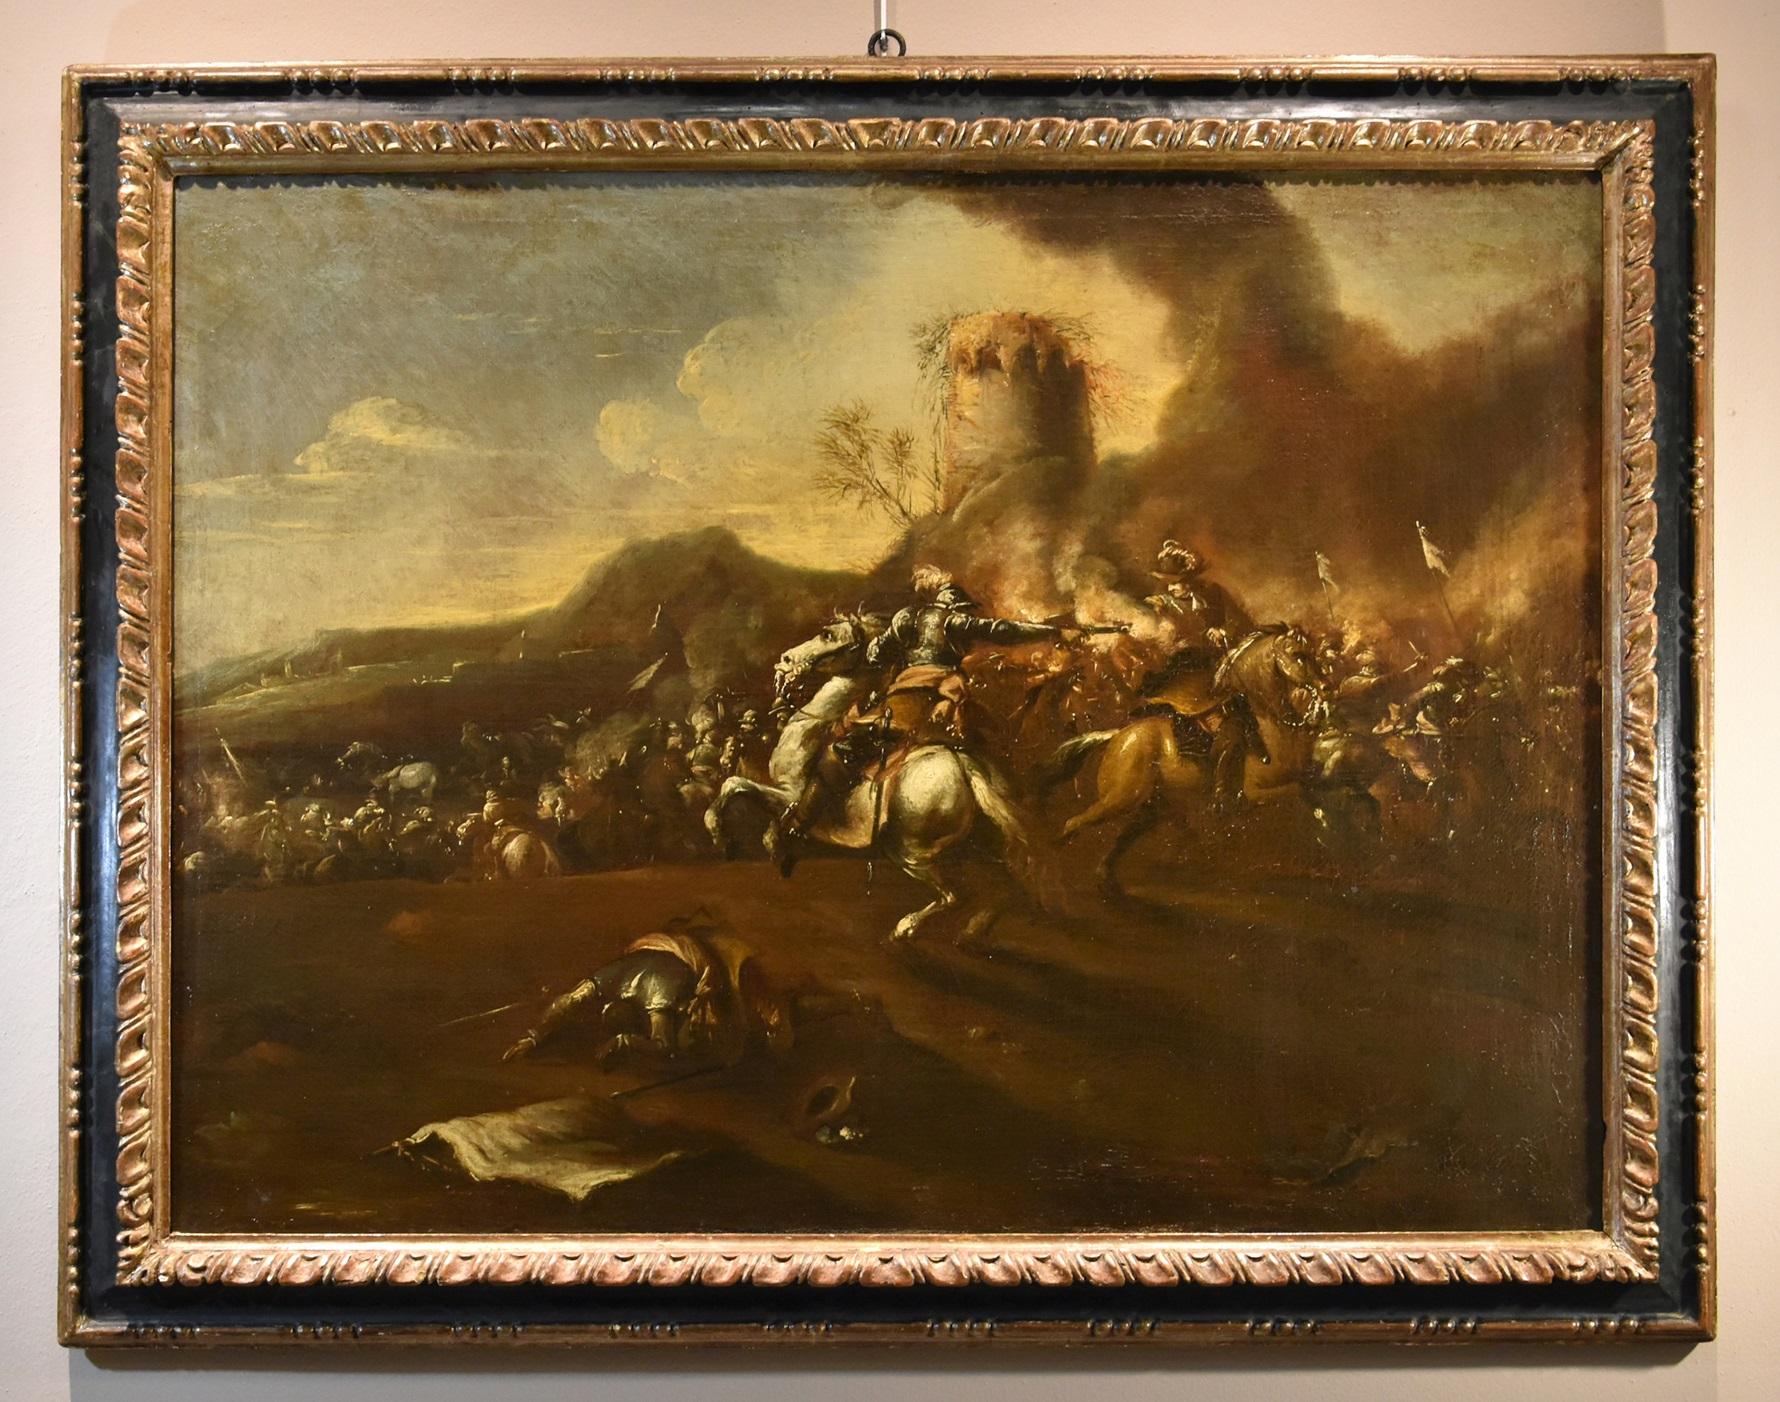 Graziani, Schlachtpferde-Landschaft, Graziani, Gemälde, Öl auf Leinwand, 17. Jahrhundert, Alter Meister